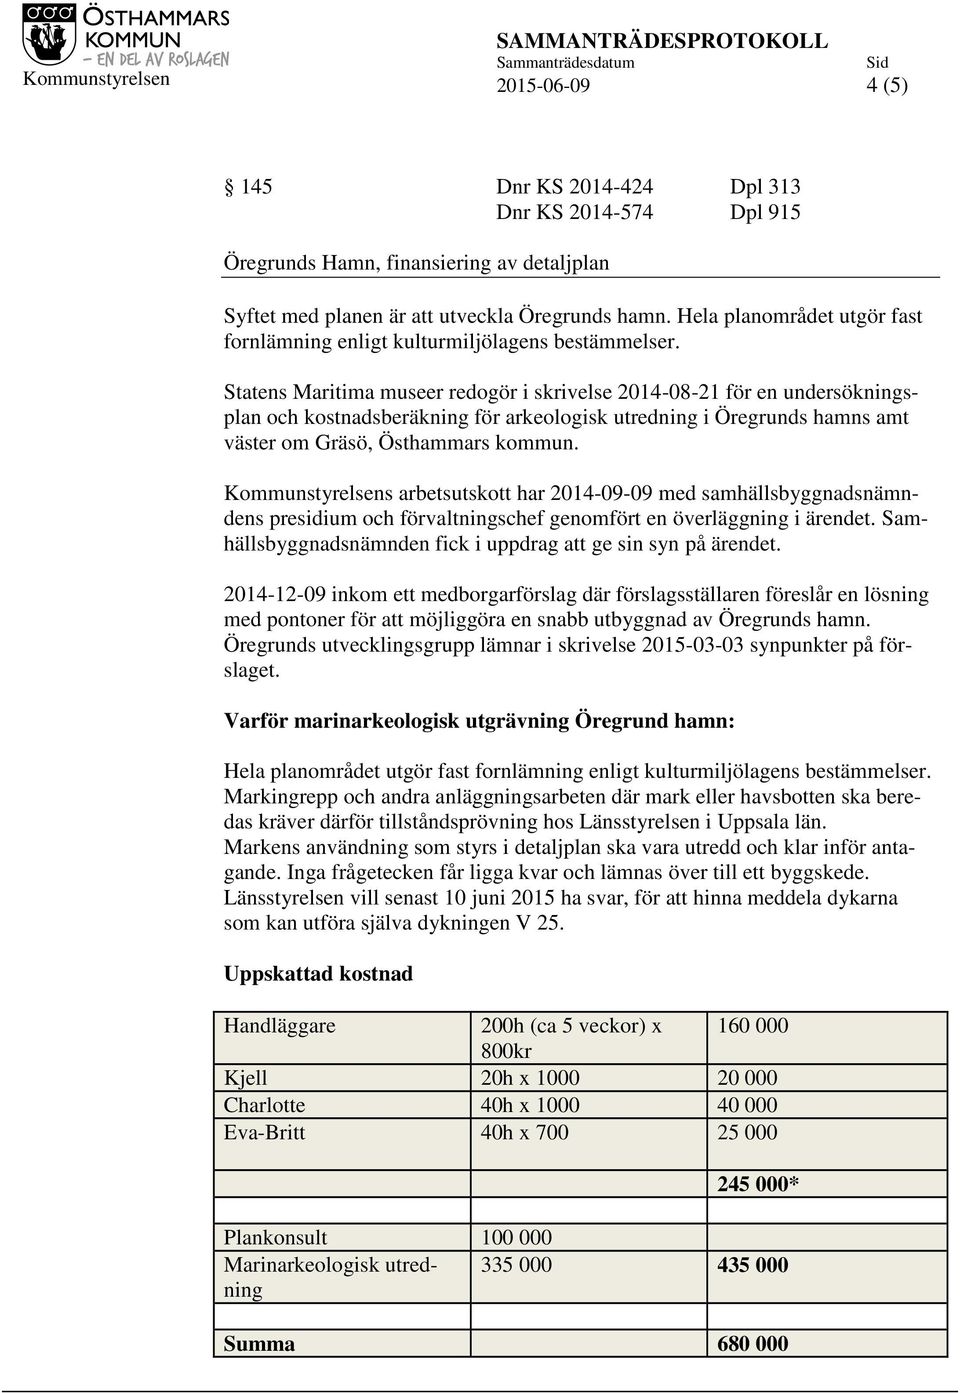 Statens Maritima museer redogör i skrivelse 2014-08-21 för en undersökningsplan och kostnadsberäkning för arkeologisk utredning i Öregrunds hamns amt väster om Gräsö, Östhammars kommun.